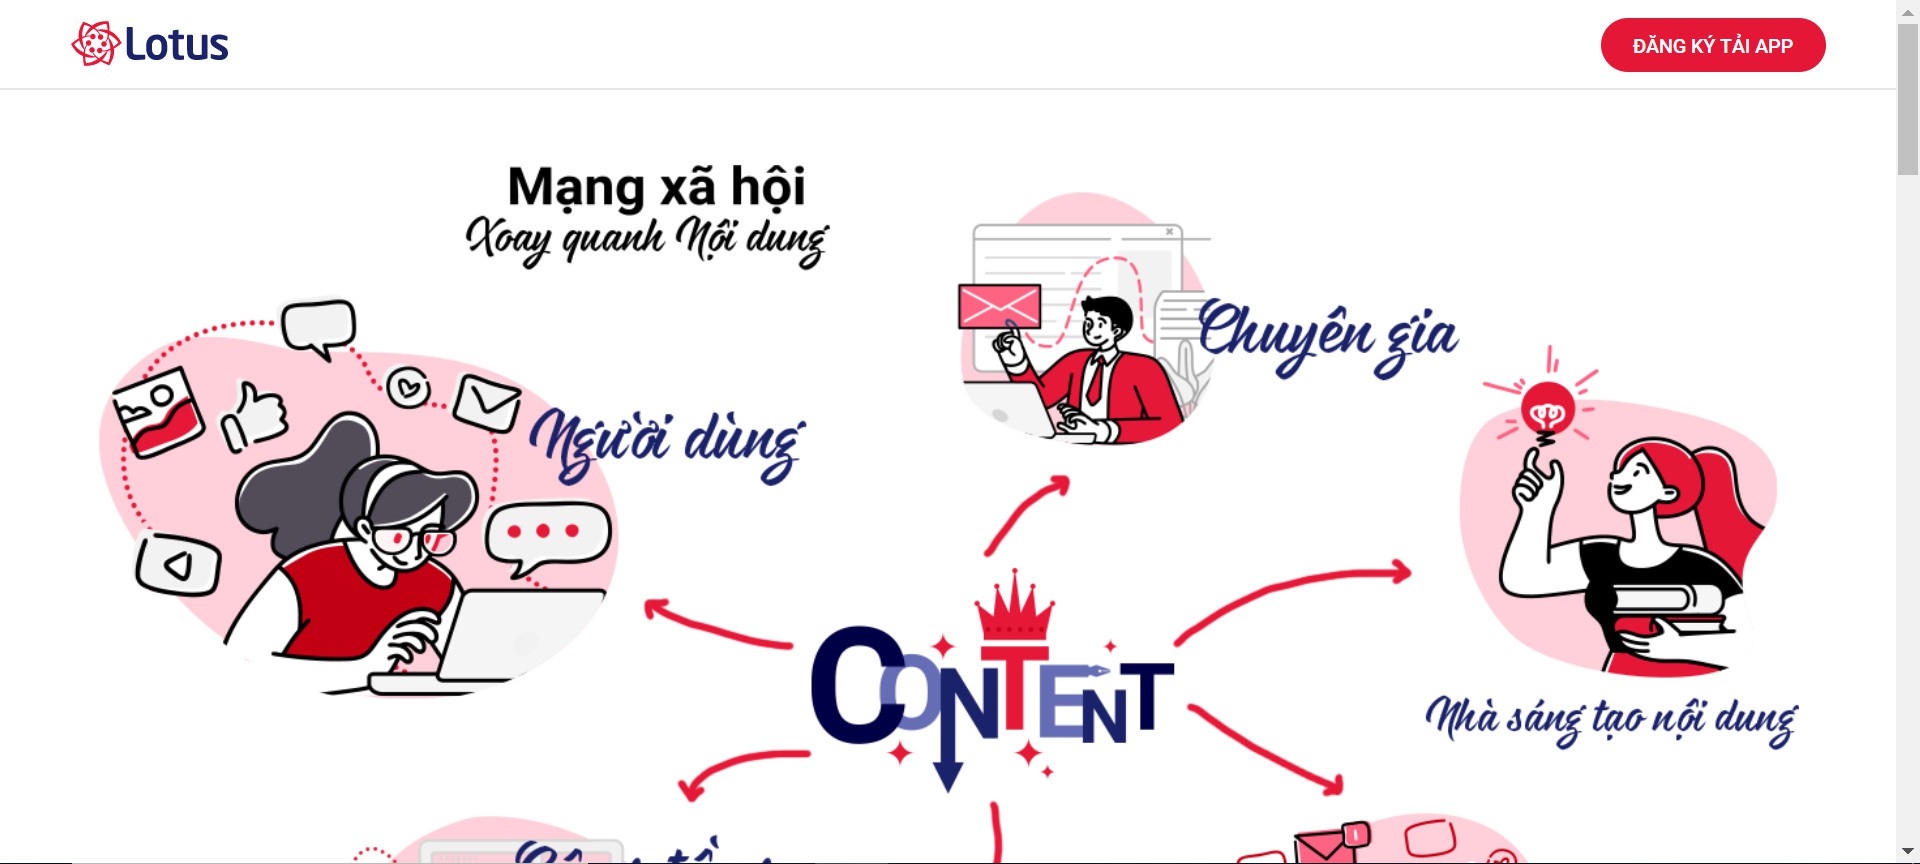 Mạng xã hội Việt Lotus: Tham gia ngay vào mạng xã hội Việt Lotus để kết nối với hàng triệu người dùng trong cộng đồng. Tích hợp các tính năng đa dạng và ưu việt, Việt Lotus sẽ giúp bạn trò chuyện, chia sẻ, thư giãn và giải trí một cách dễ dàng và nhanh chóng.